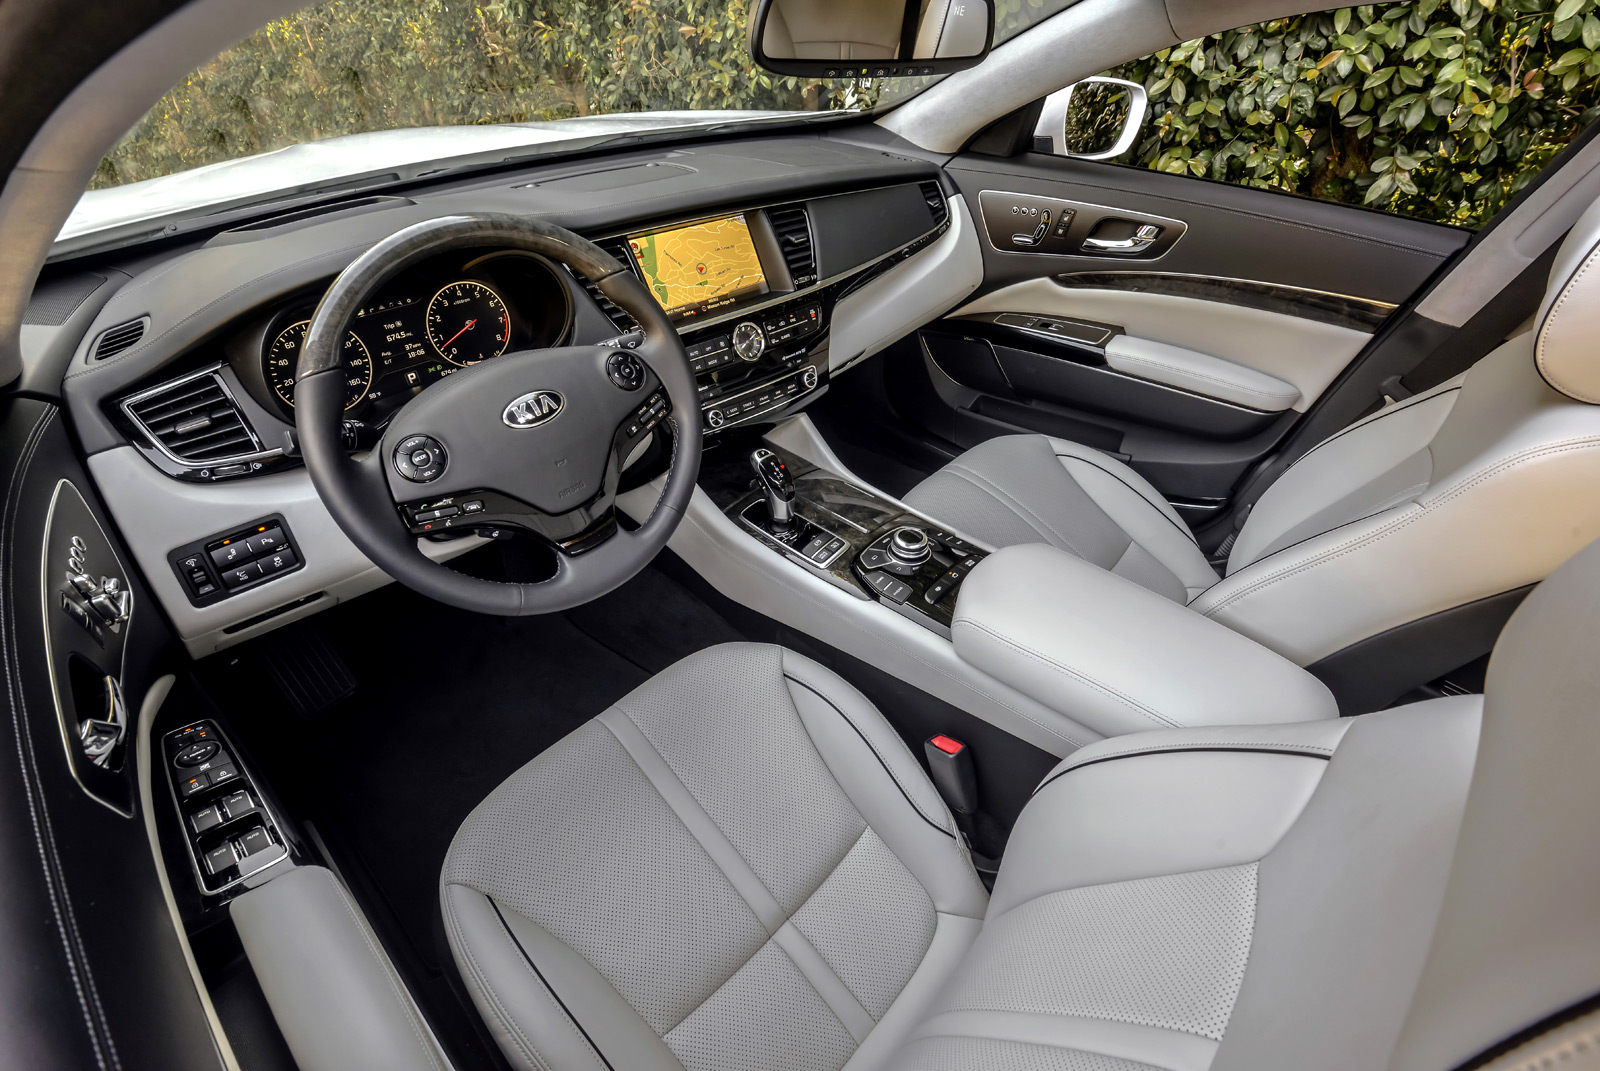 2015 Kia K900 interior